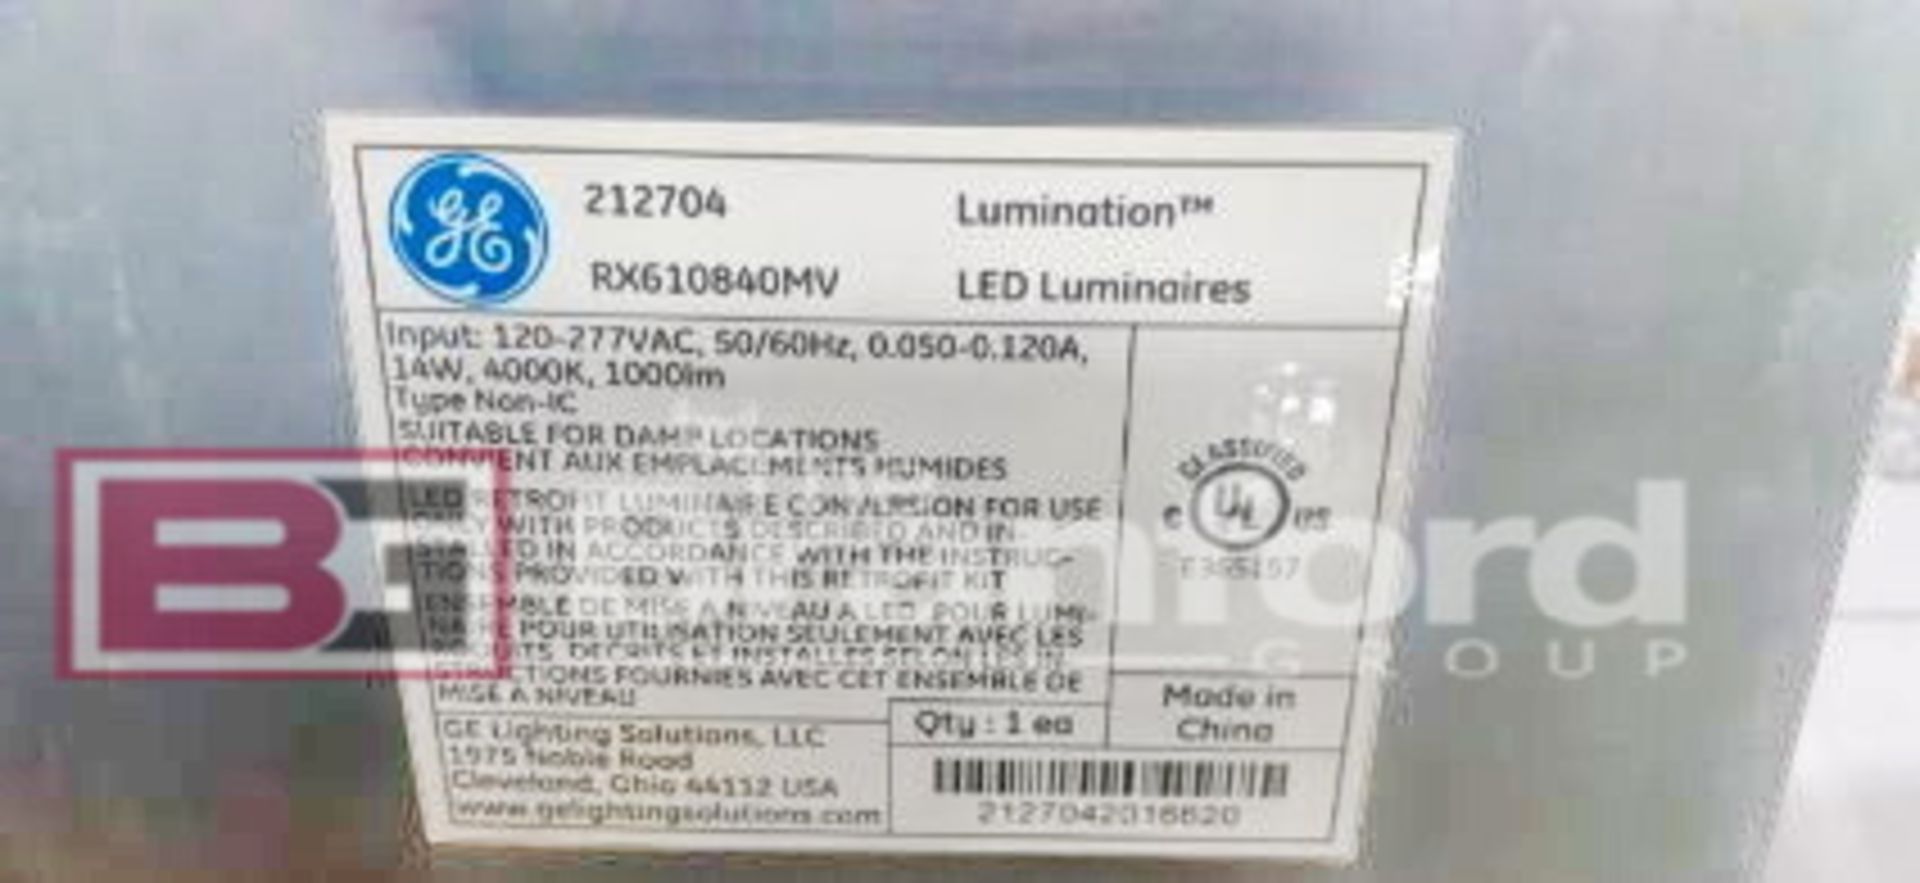 Lot of GE LED Luminaire - Image 6 of 7